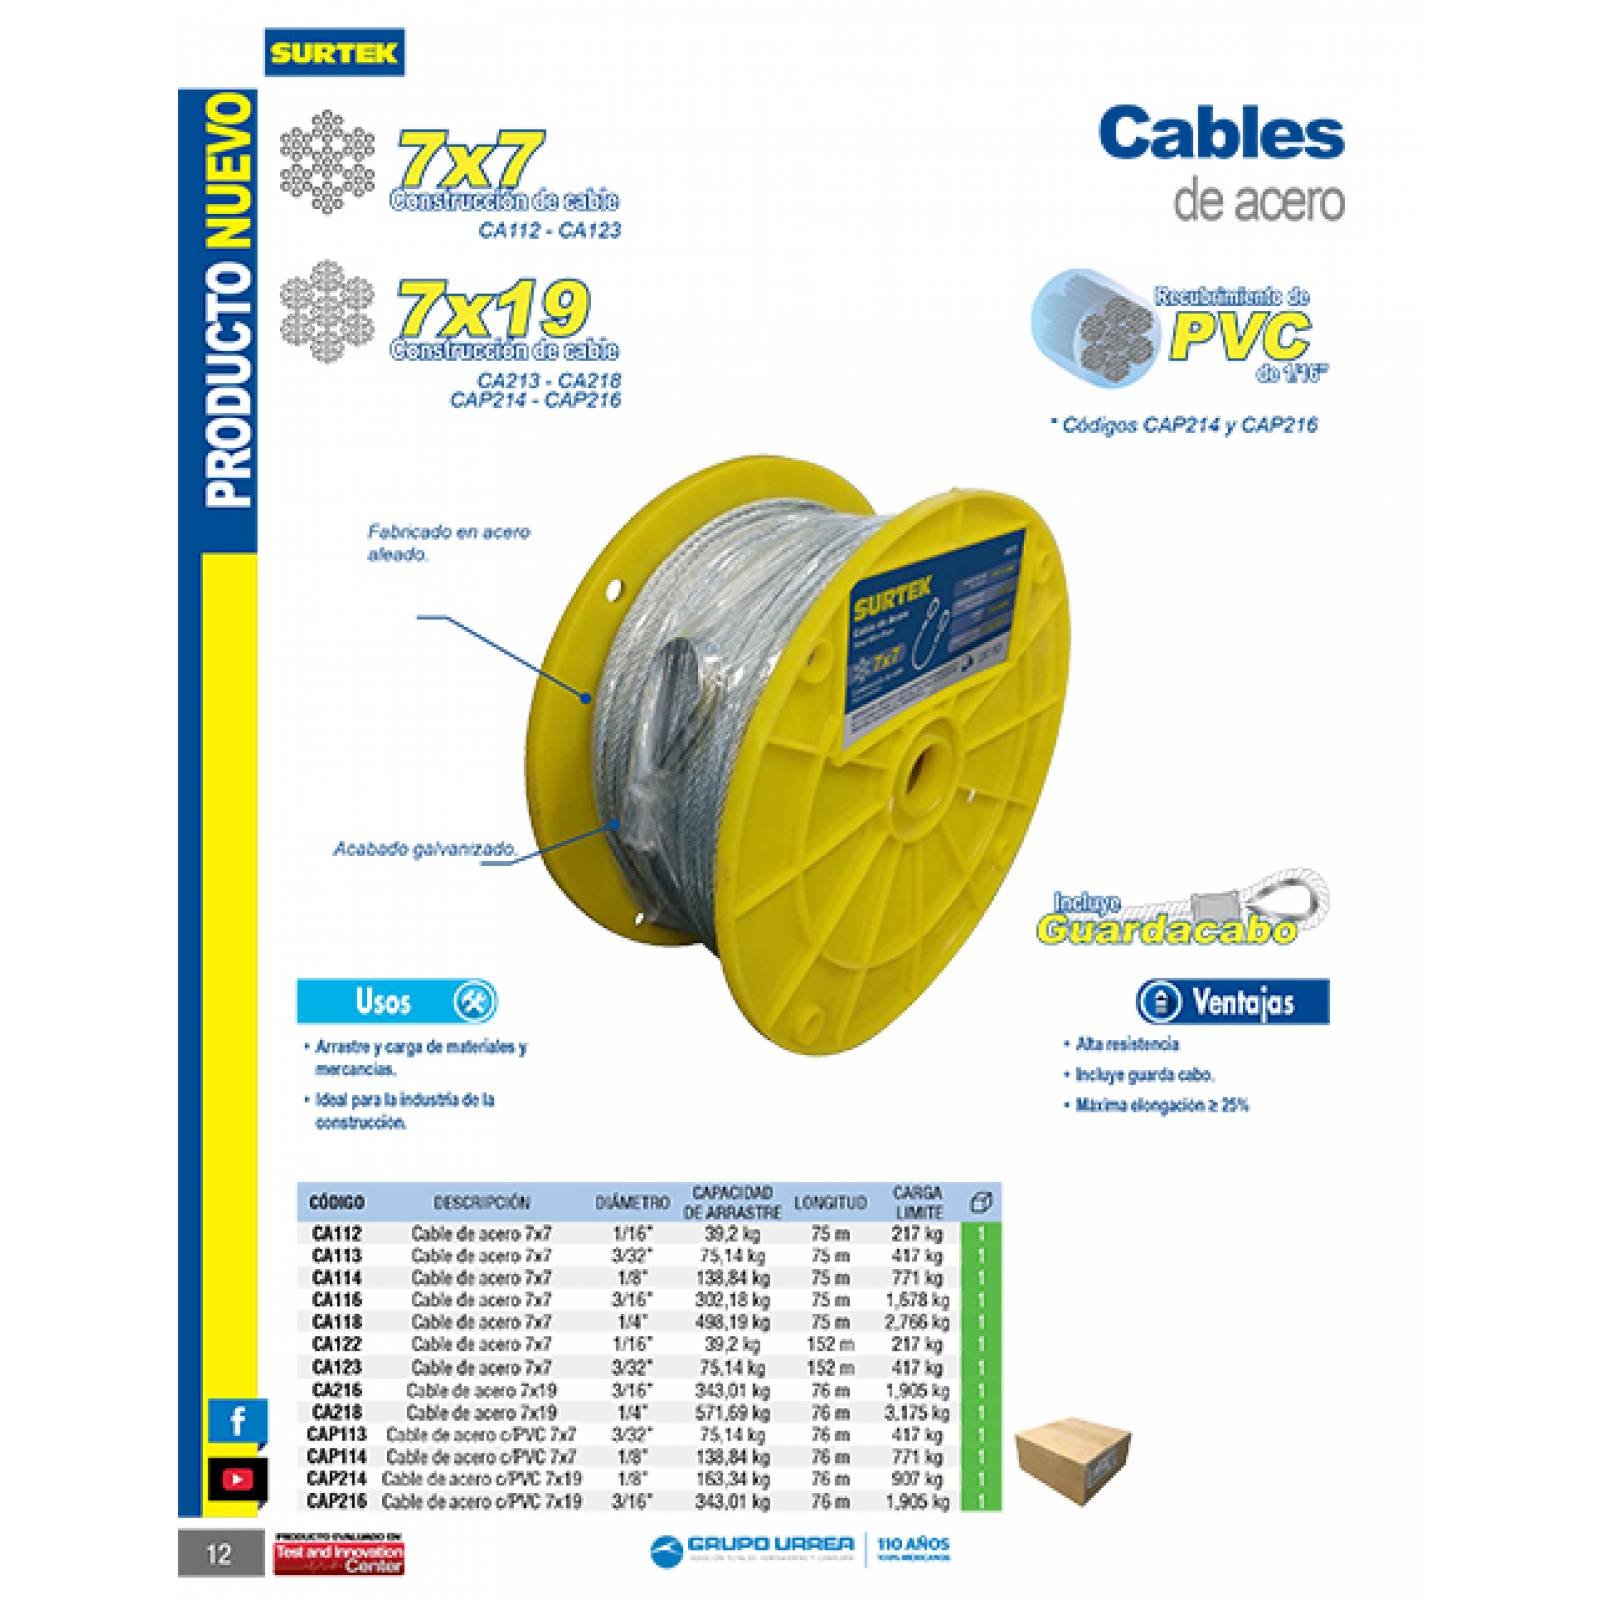 Cable Acero 7 X 19 1/4 X 76 Metros Ca218 Surtek 